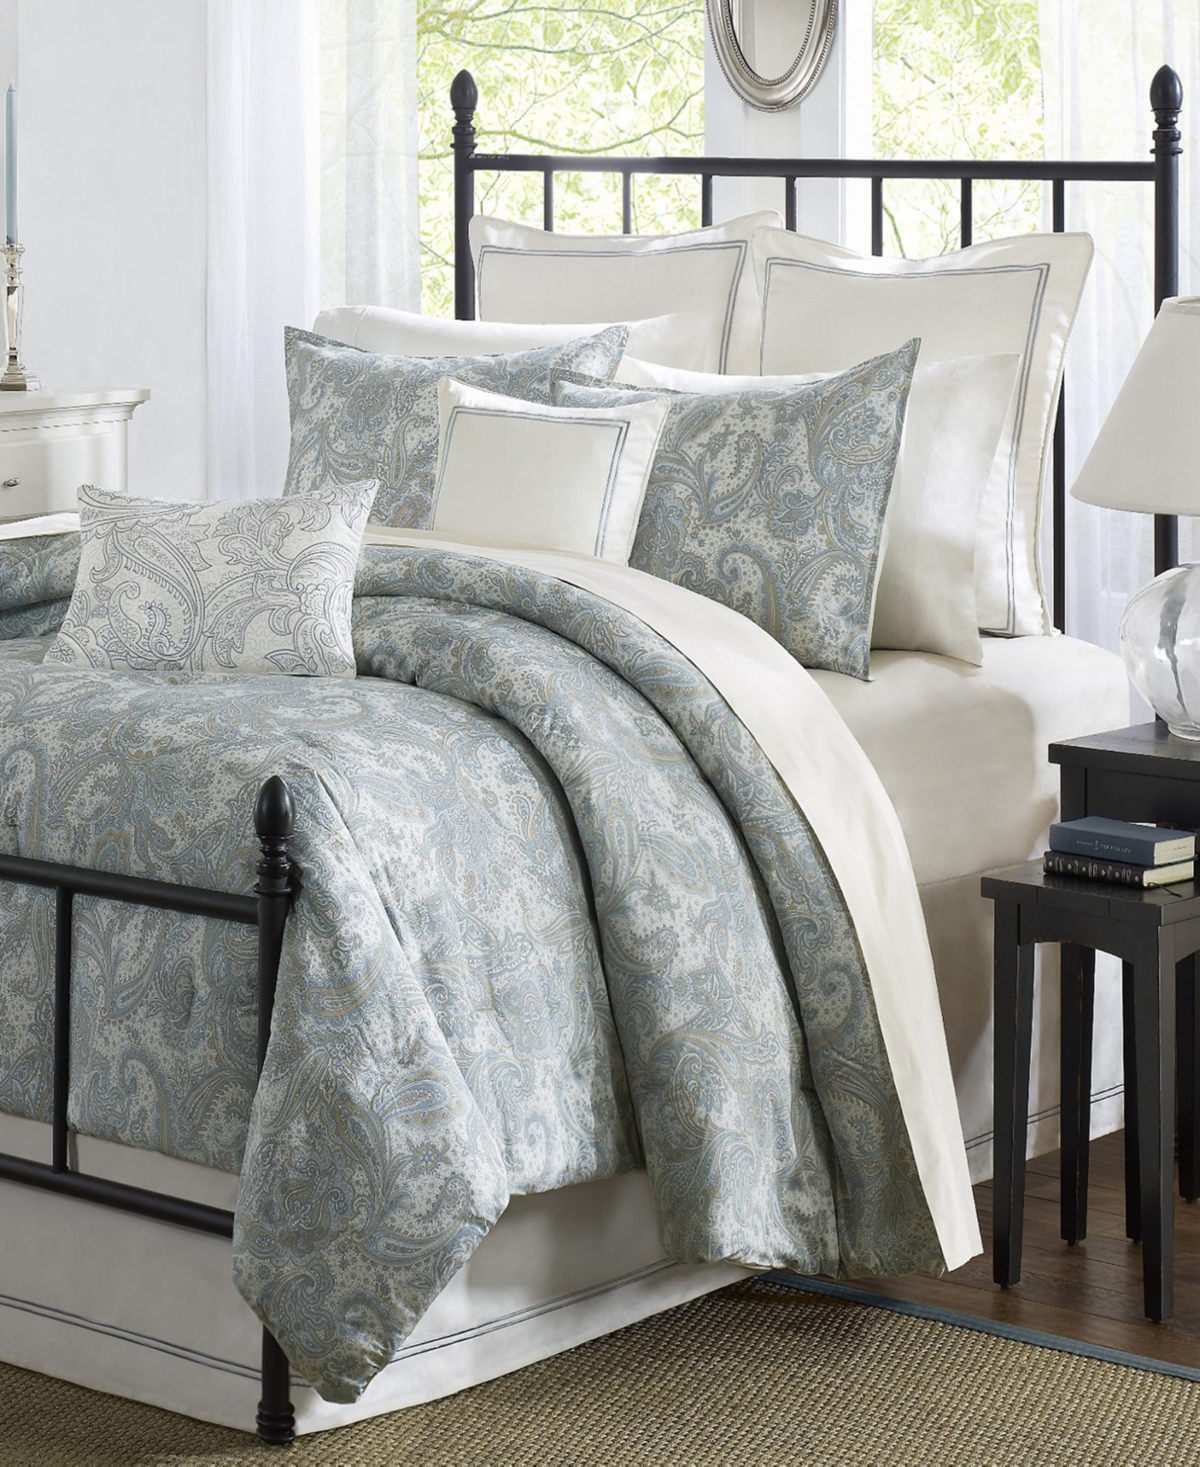 Harbor House Chelsea 4-Pc. King Comforter Set Bedding